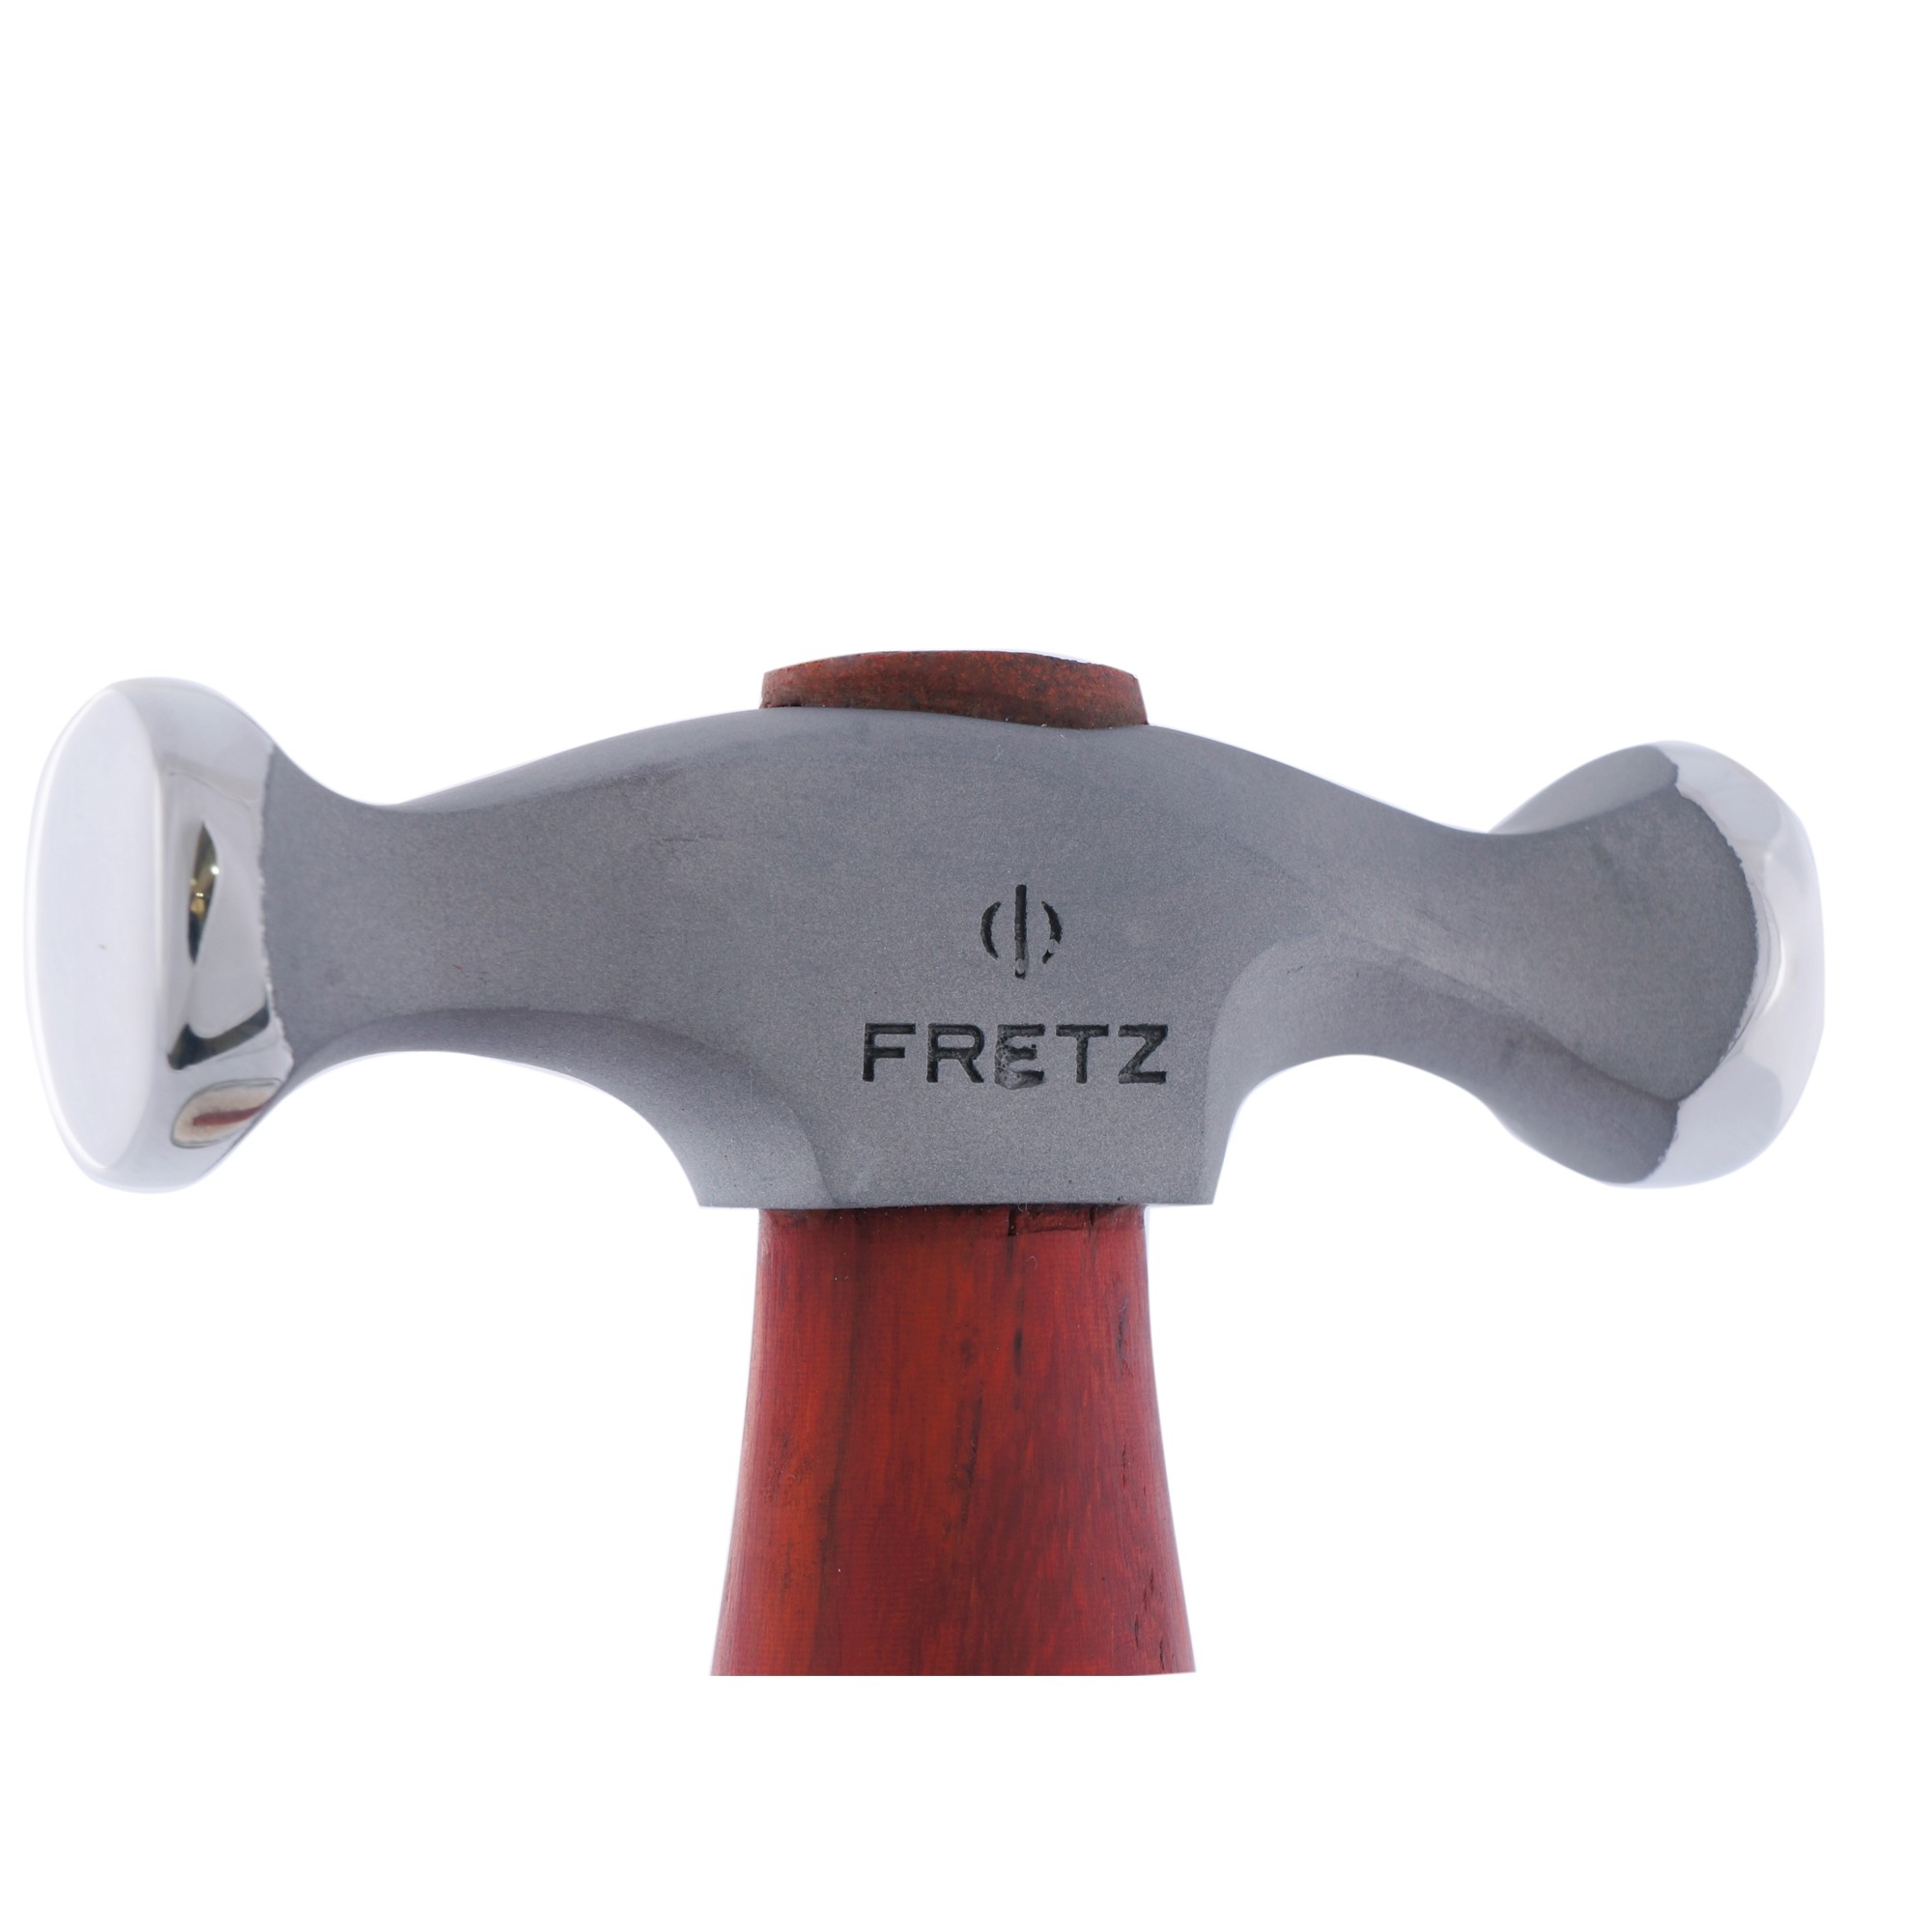 Fretz® HMR-1 Jeweler's Planishing Hammer, 3.1 oz. - RioGrande